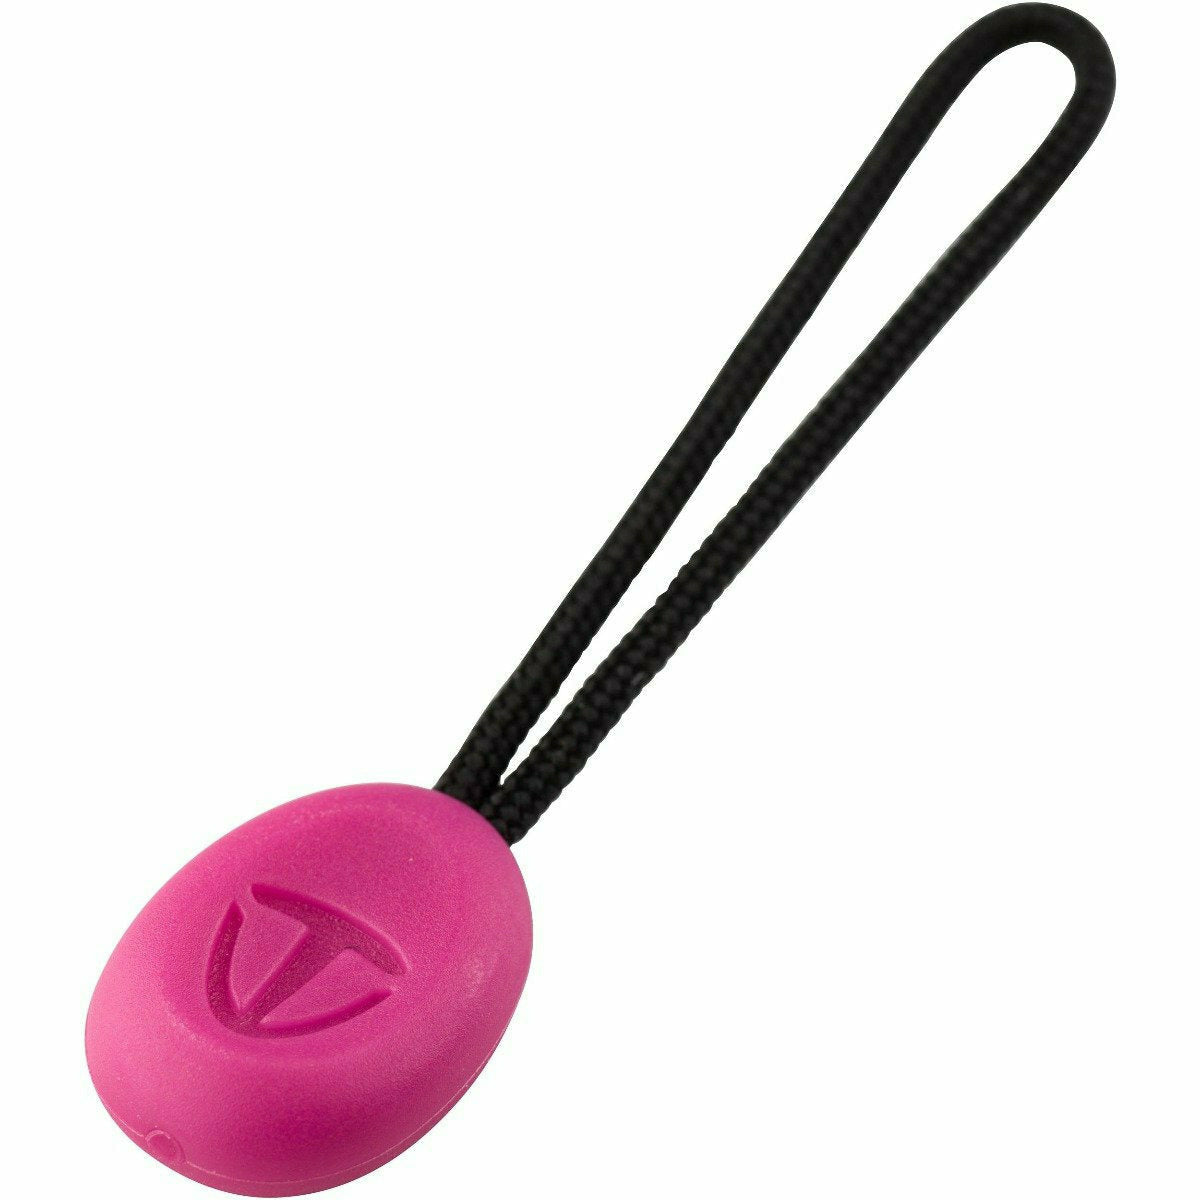 Tenba Tools Zipper Pulls - Pack of 10 - Pink - Dragon Image